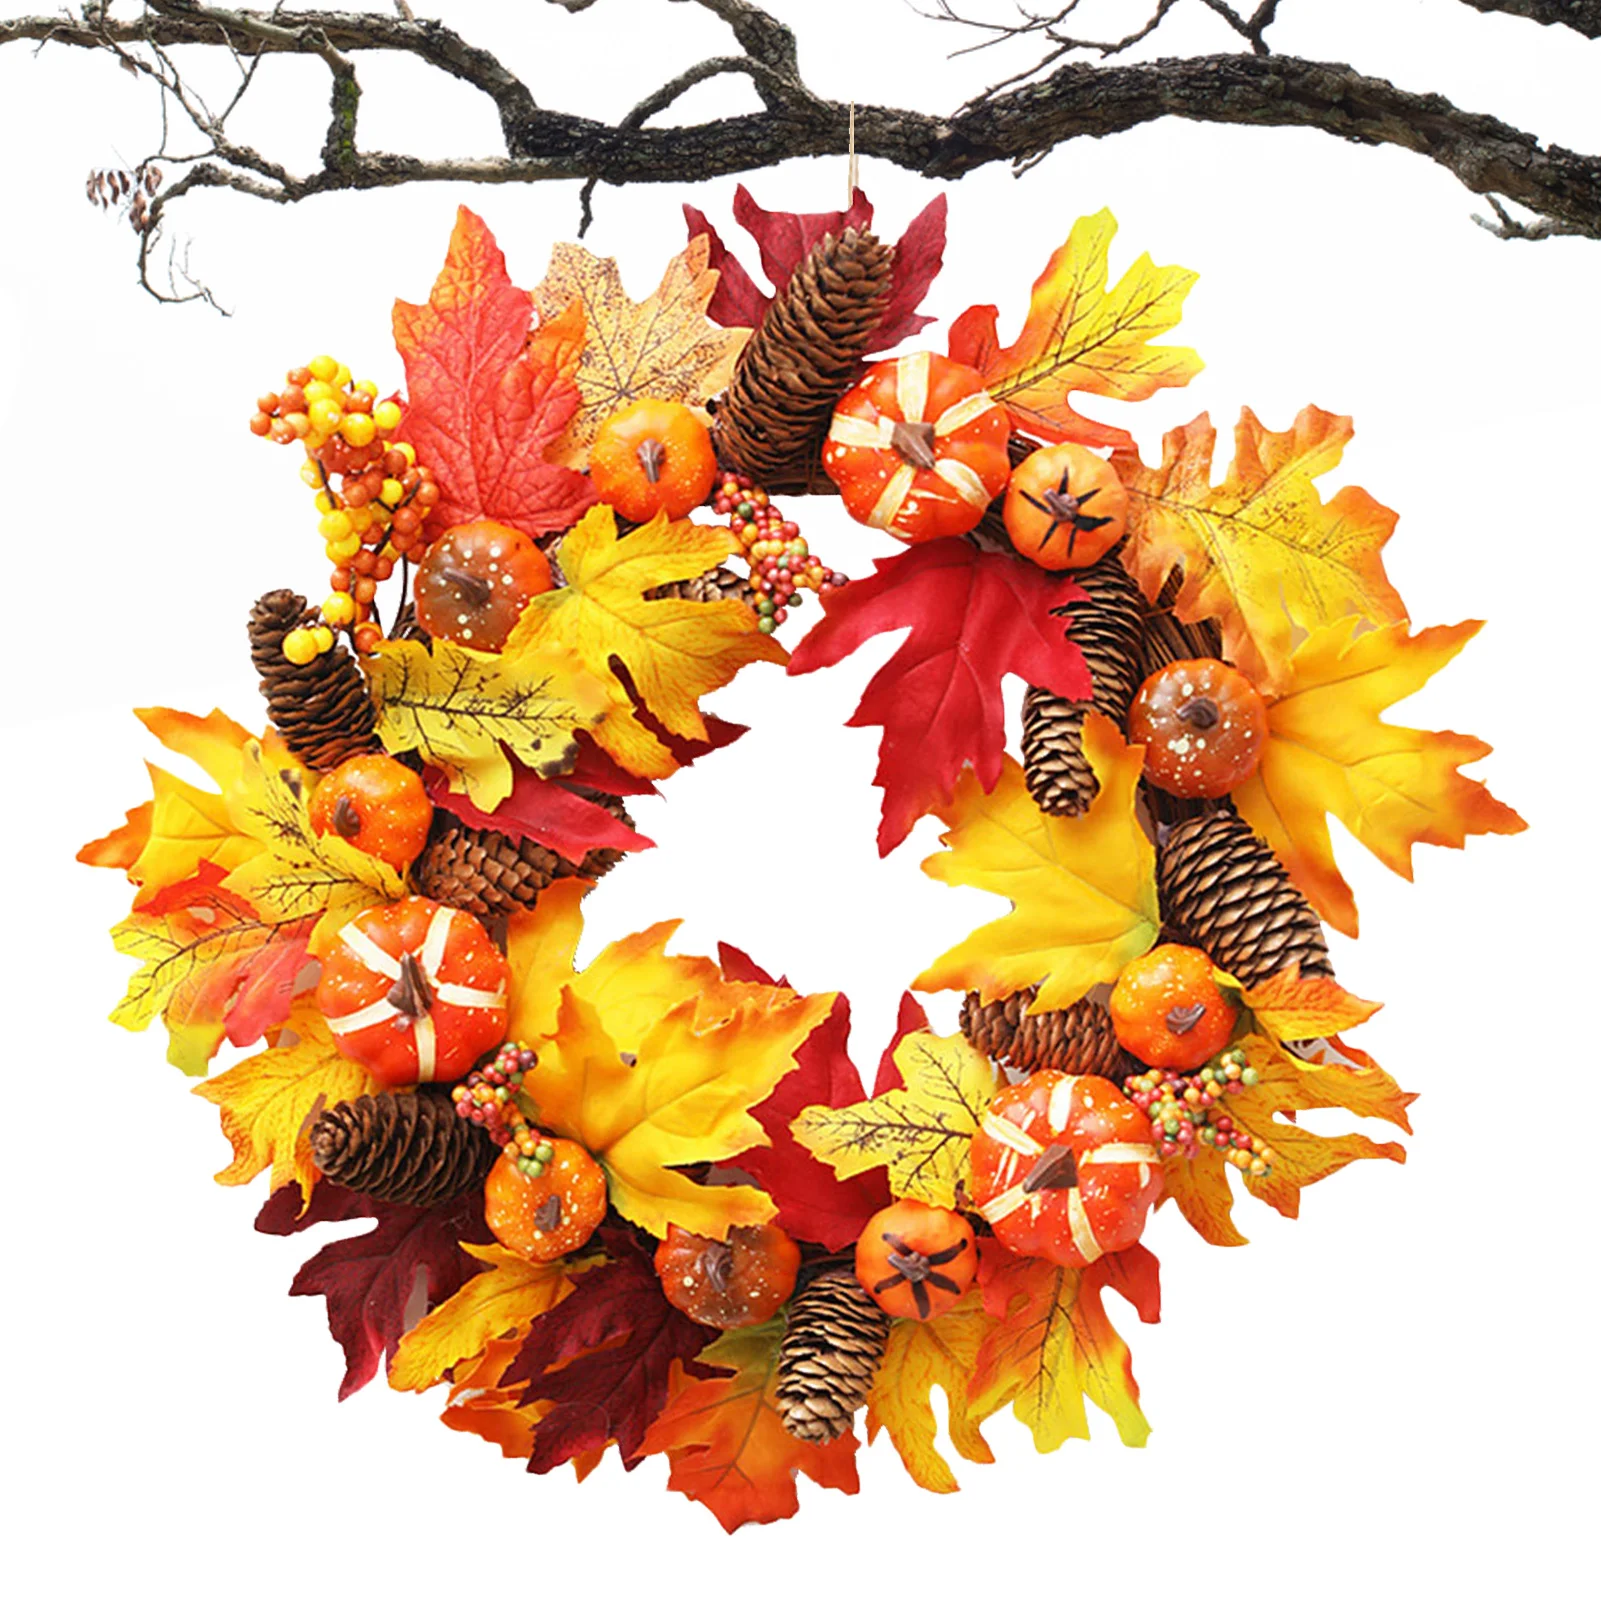 

Осенний венок с тыквами, украшение для осени, венок на переднюю дверь, тыквенный пинезон 45 см/17,7 дюйма, кленовые листья, венки с сосновой кону...